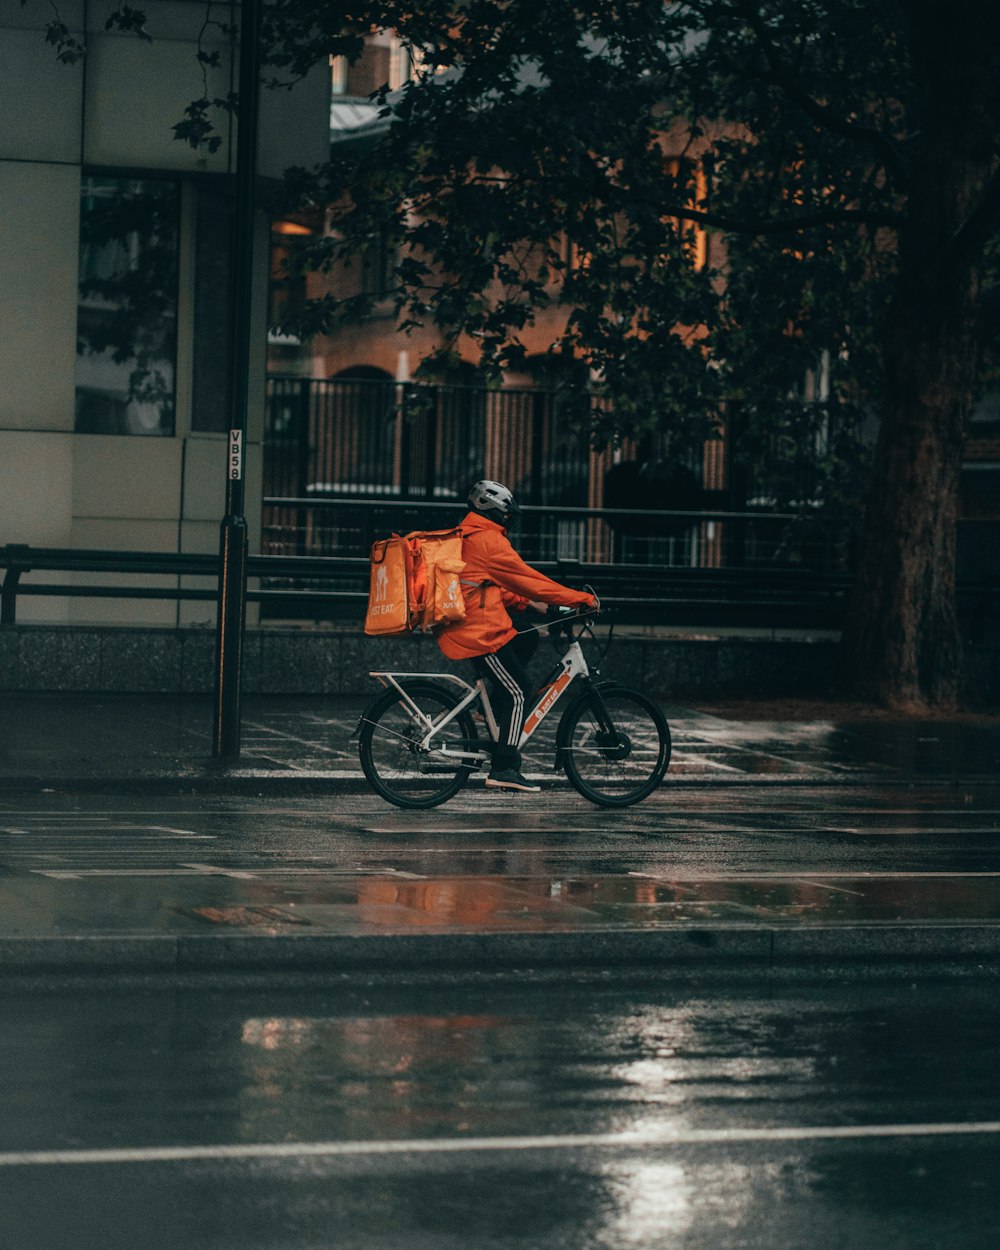 オレンジ色のジャケットを着た男性が夜間に路上で自転車に乗る